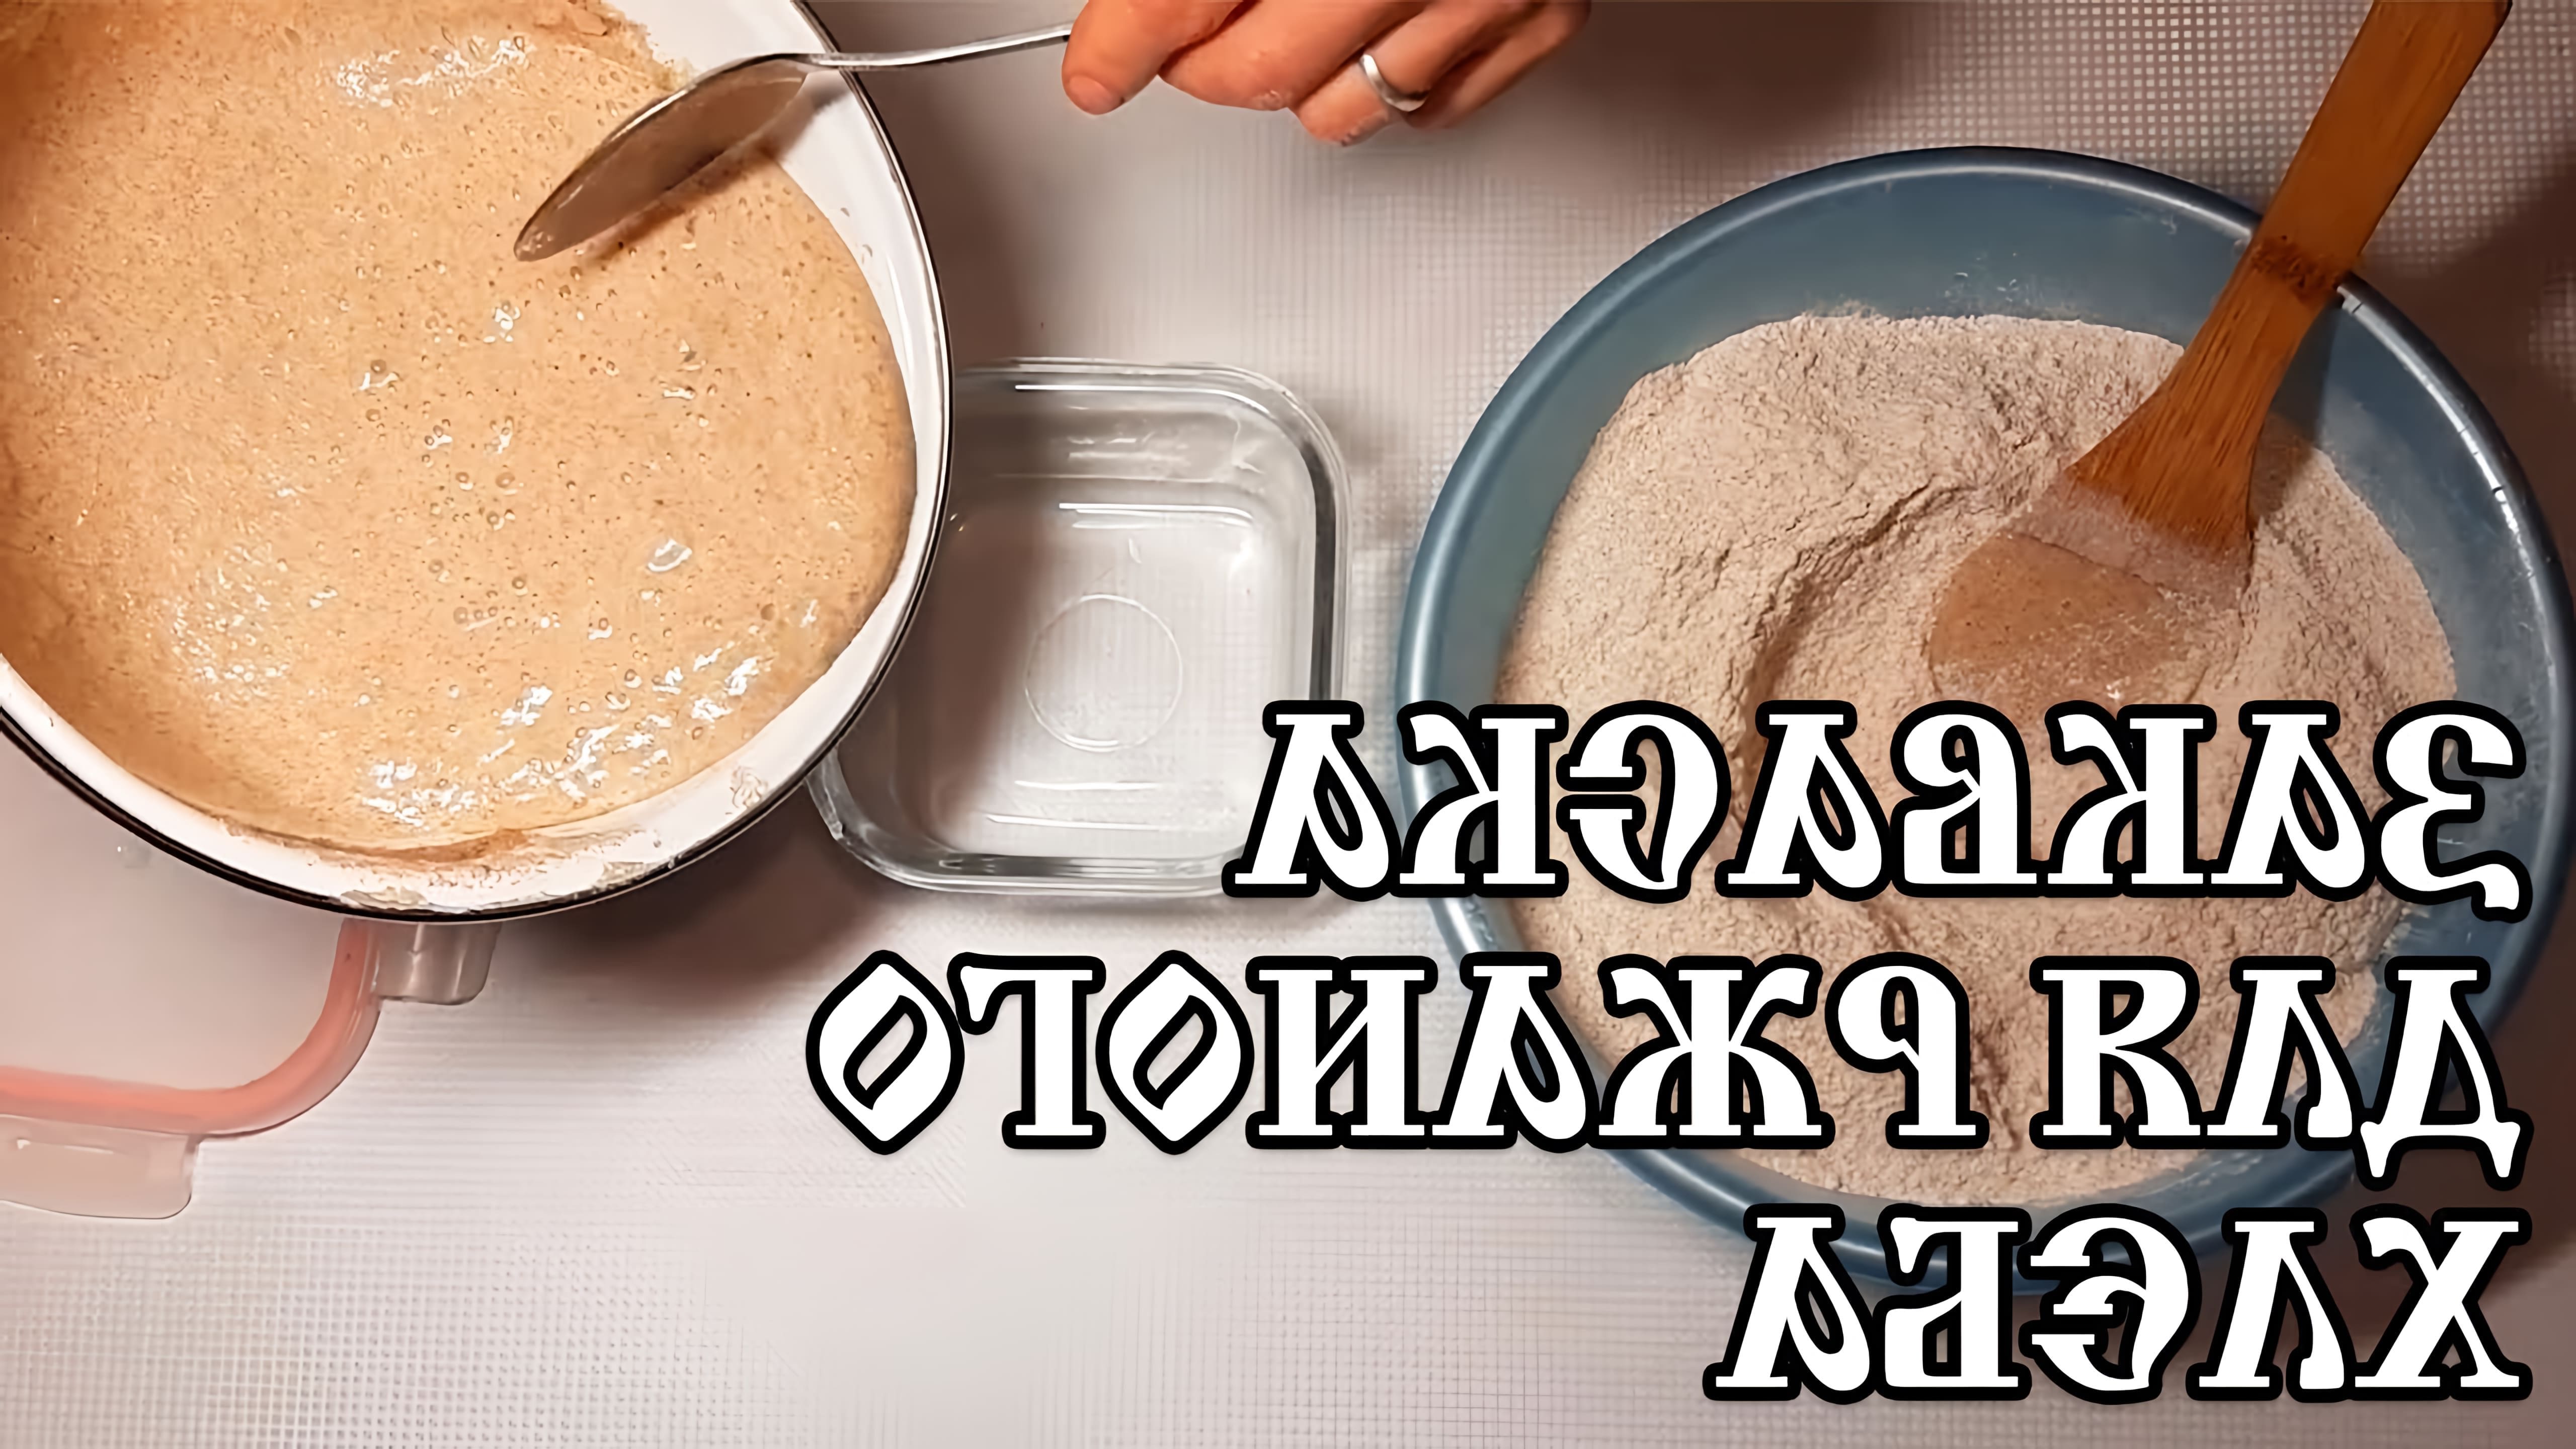 В данном видео демонстрируется процесс приготовления ржаной закваски для бездрожжевого хлеба